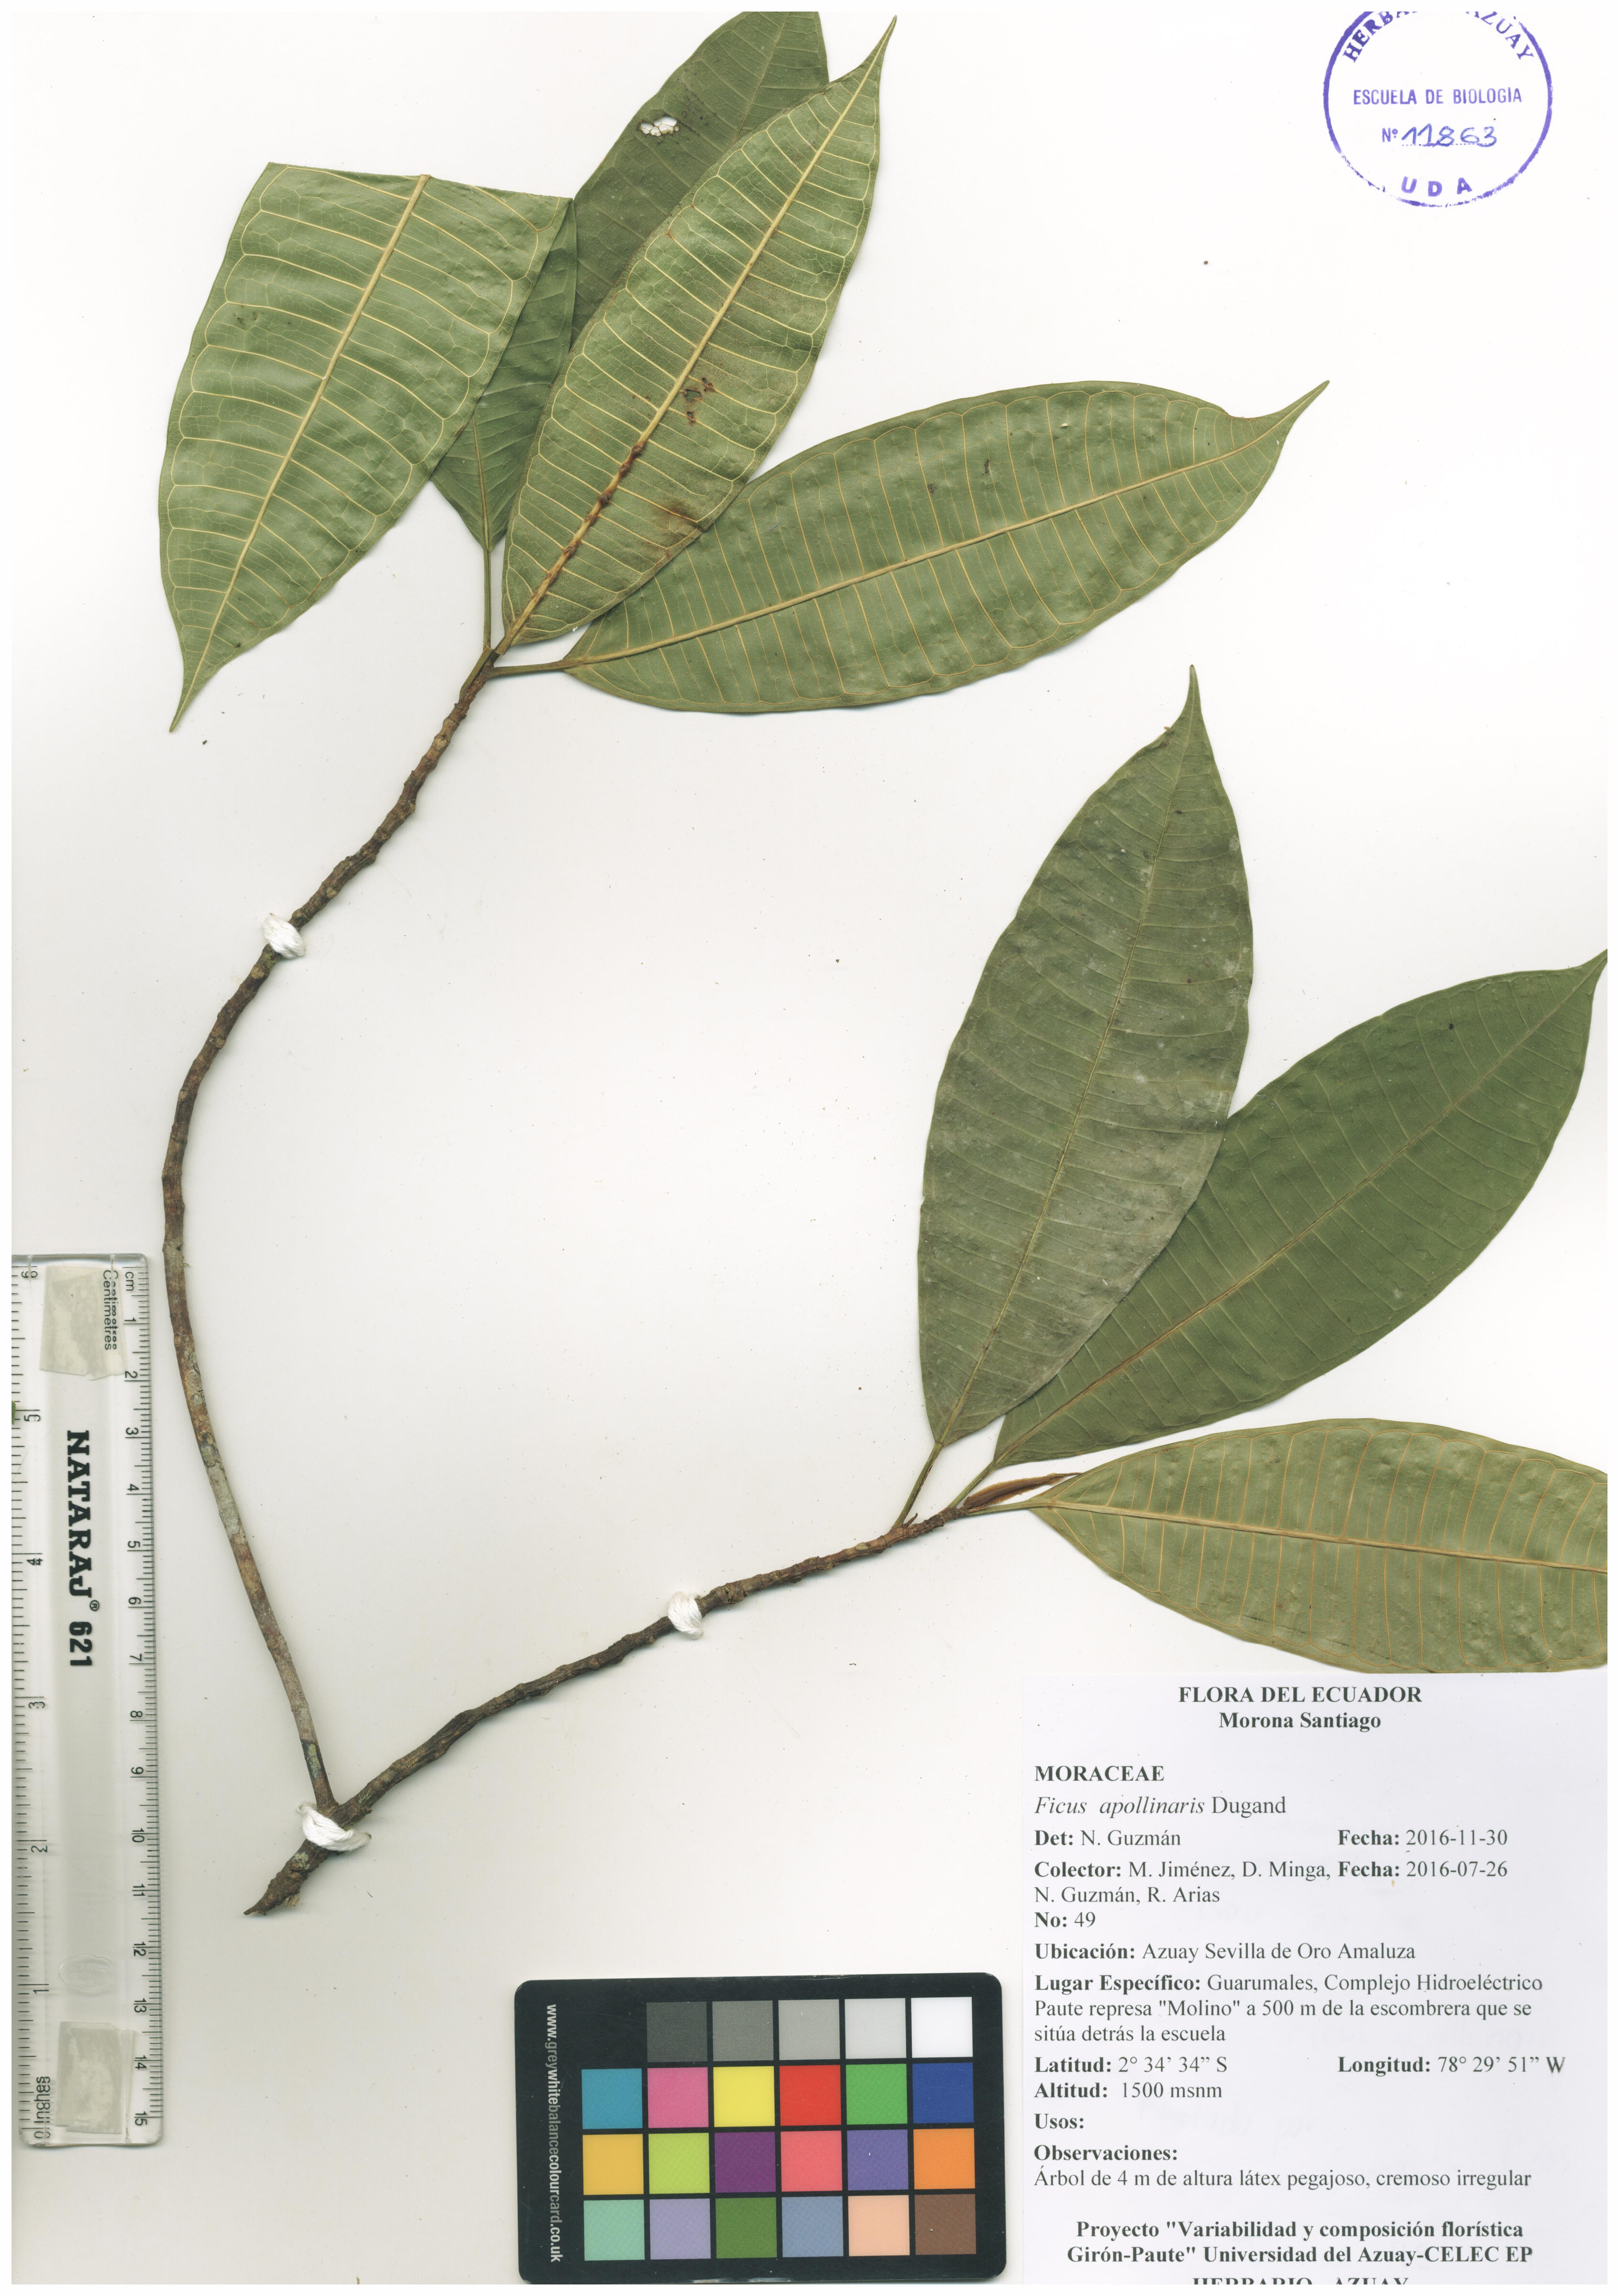 Ficus apollinaris Dugand